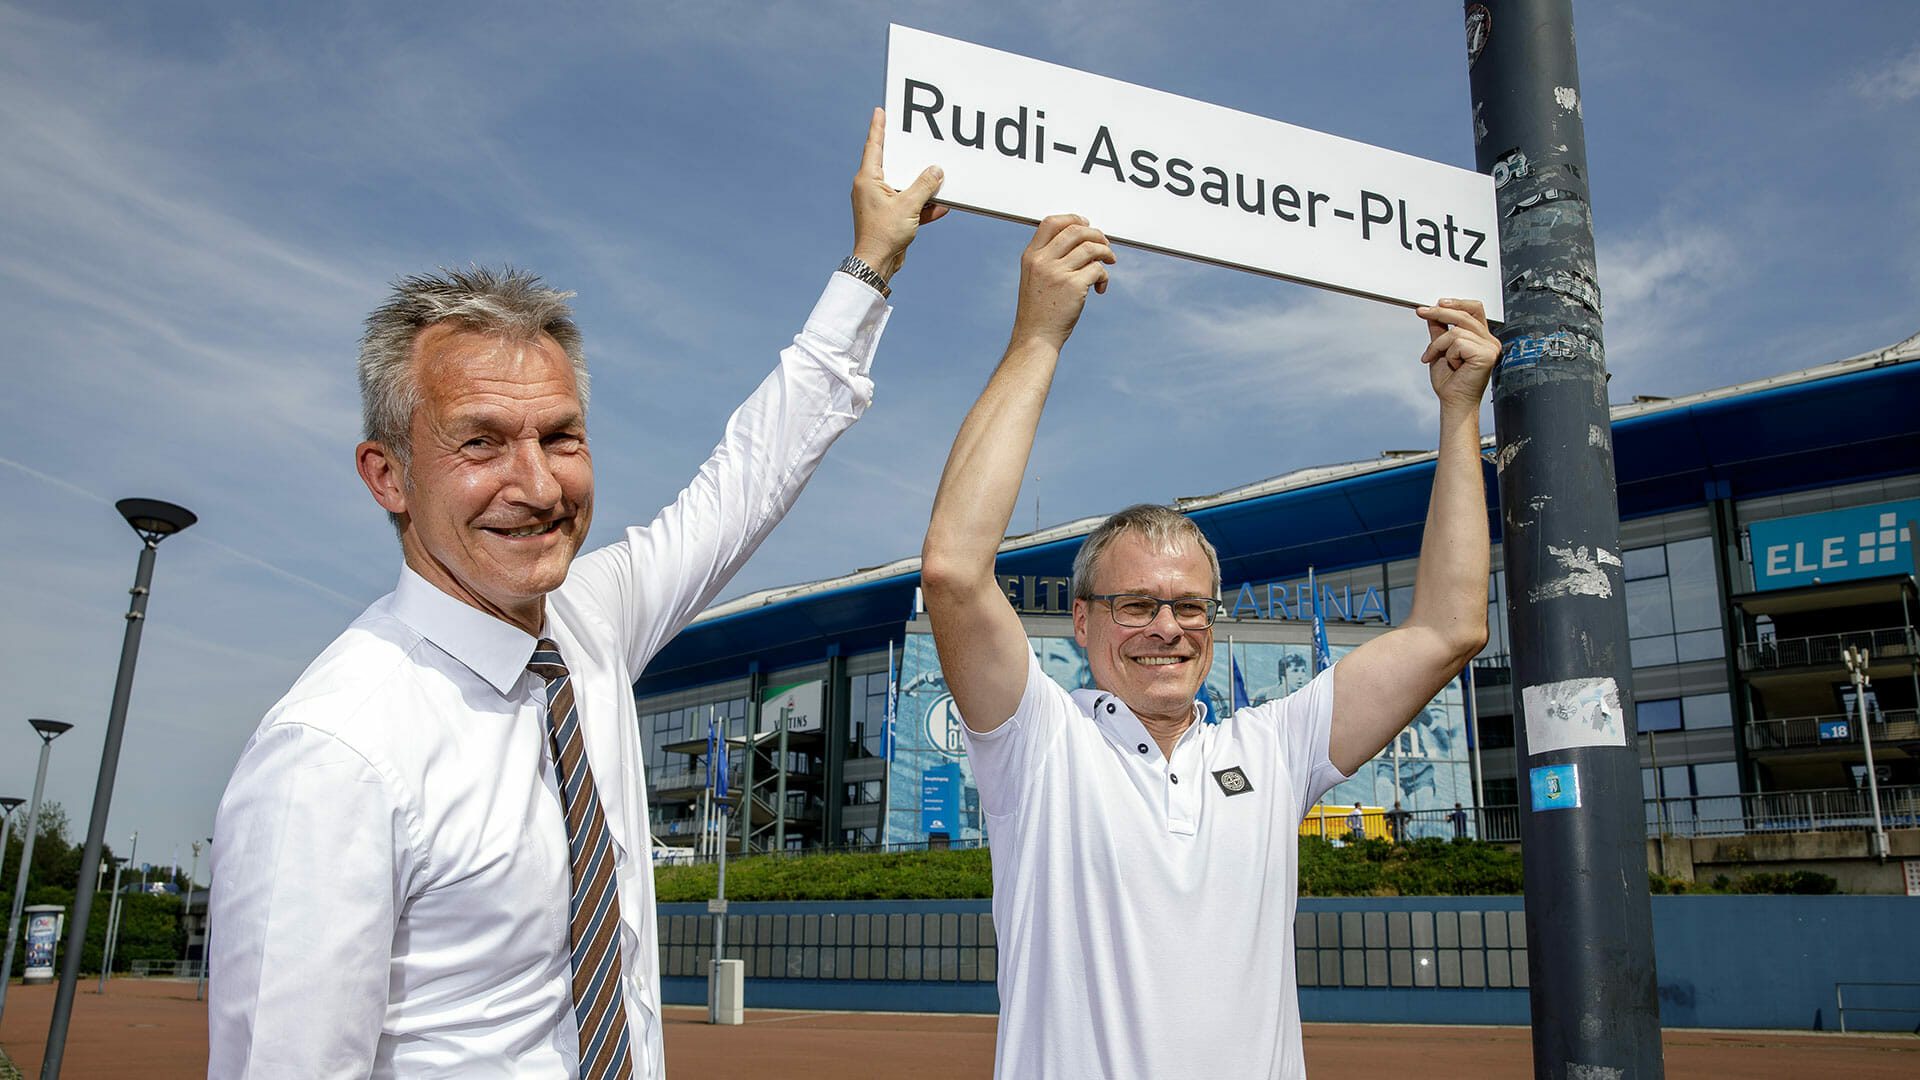 Rudi-Assauer-Platz